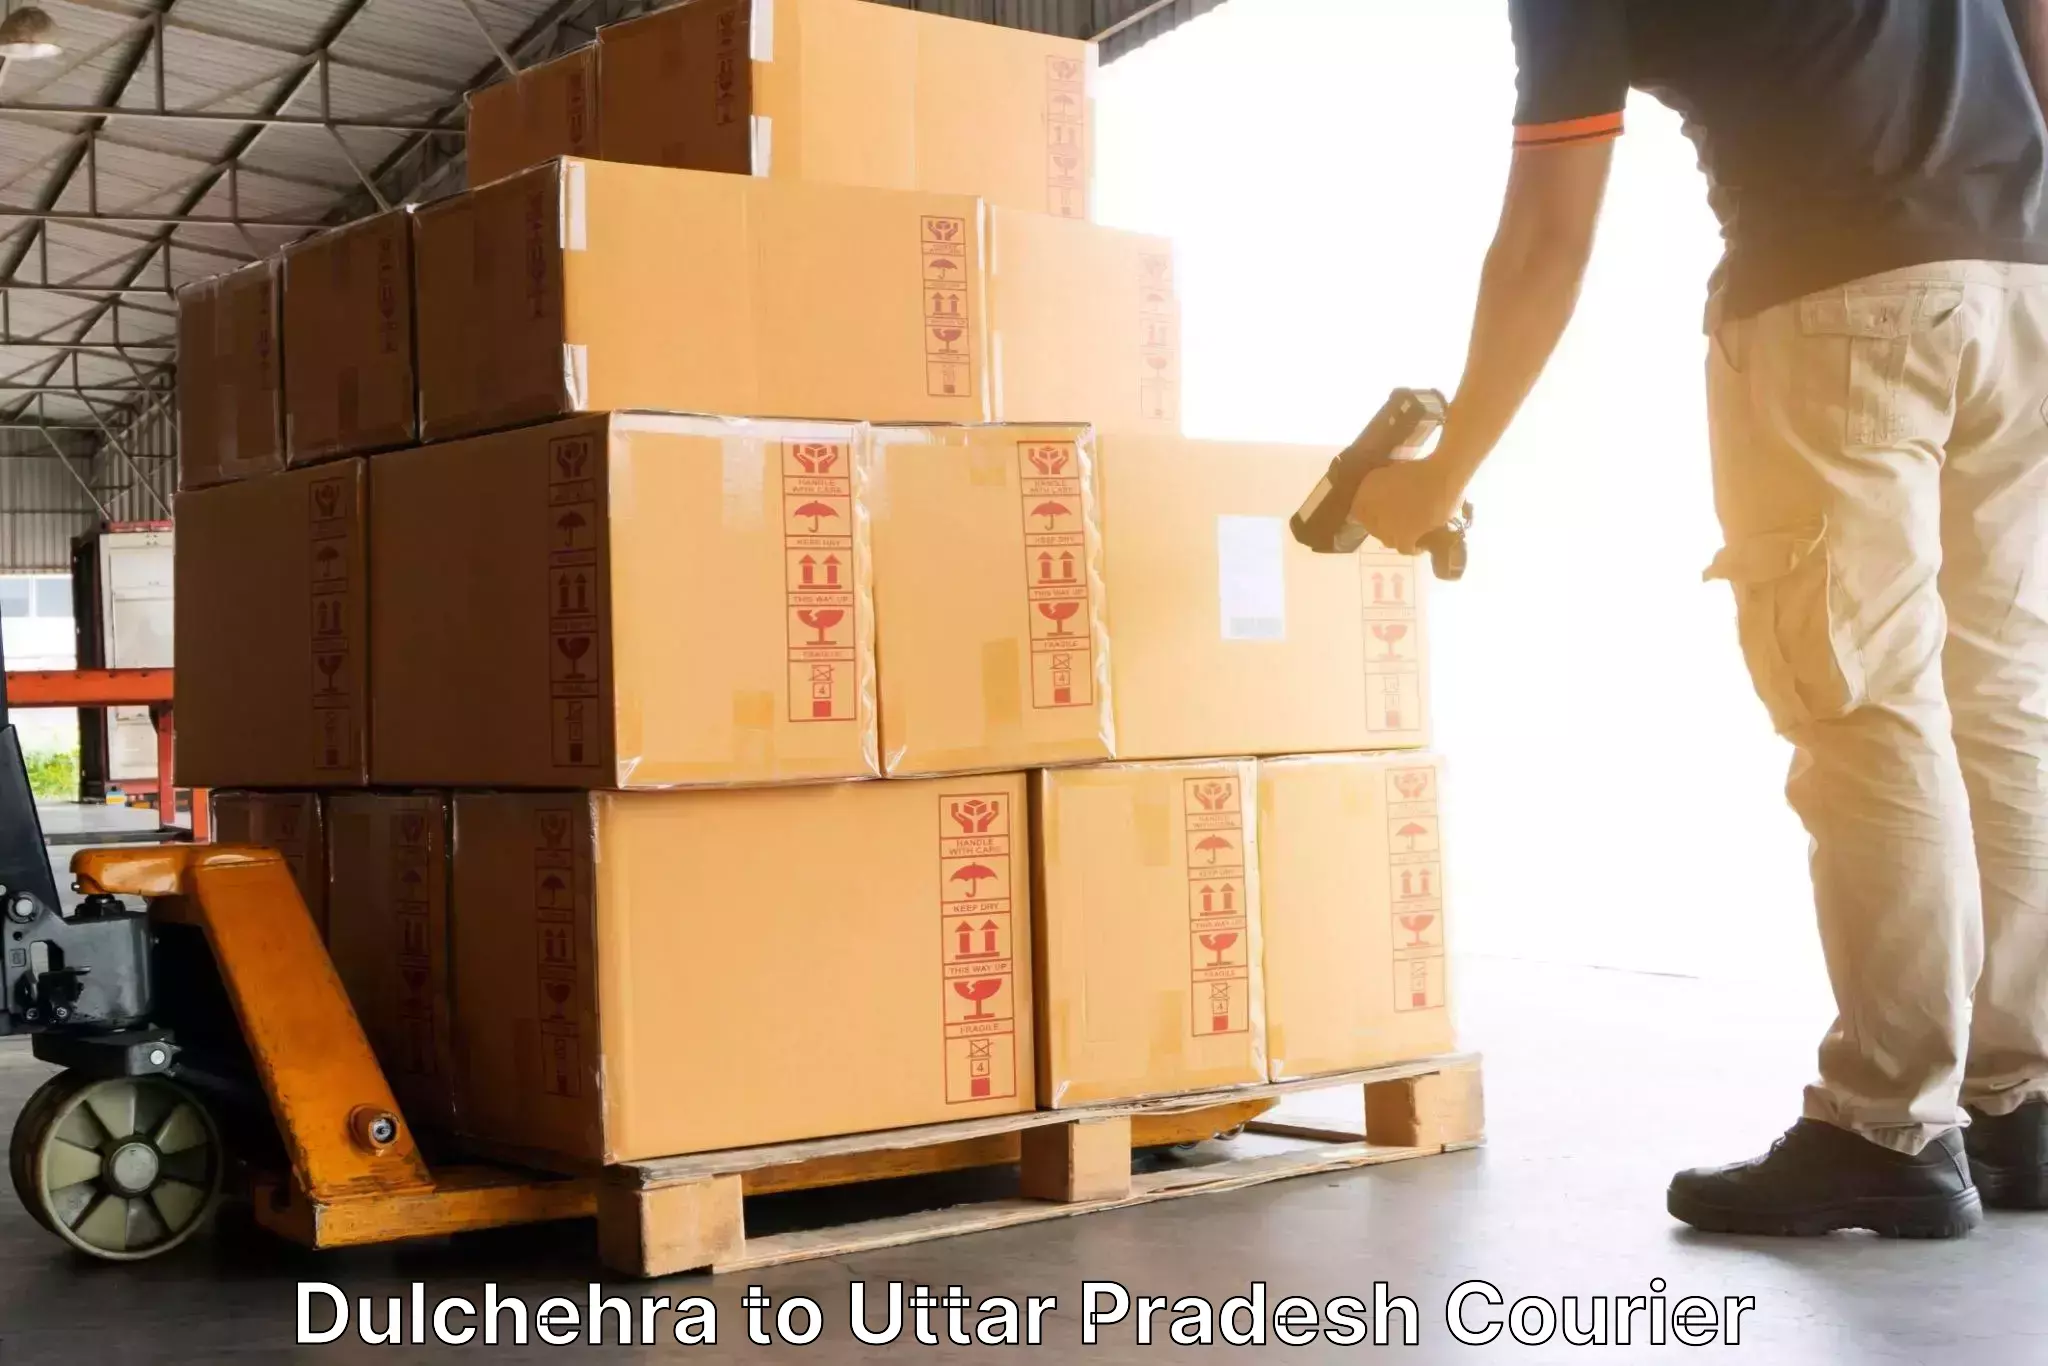 Customer-focused courier Dulchehra to Kheragarh